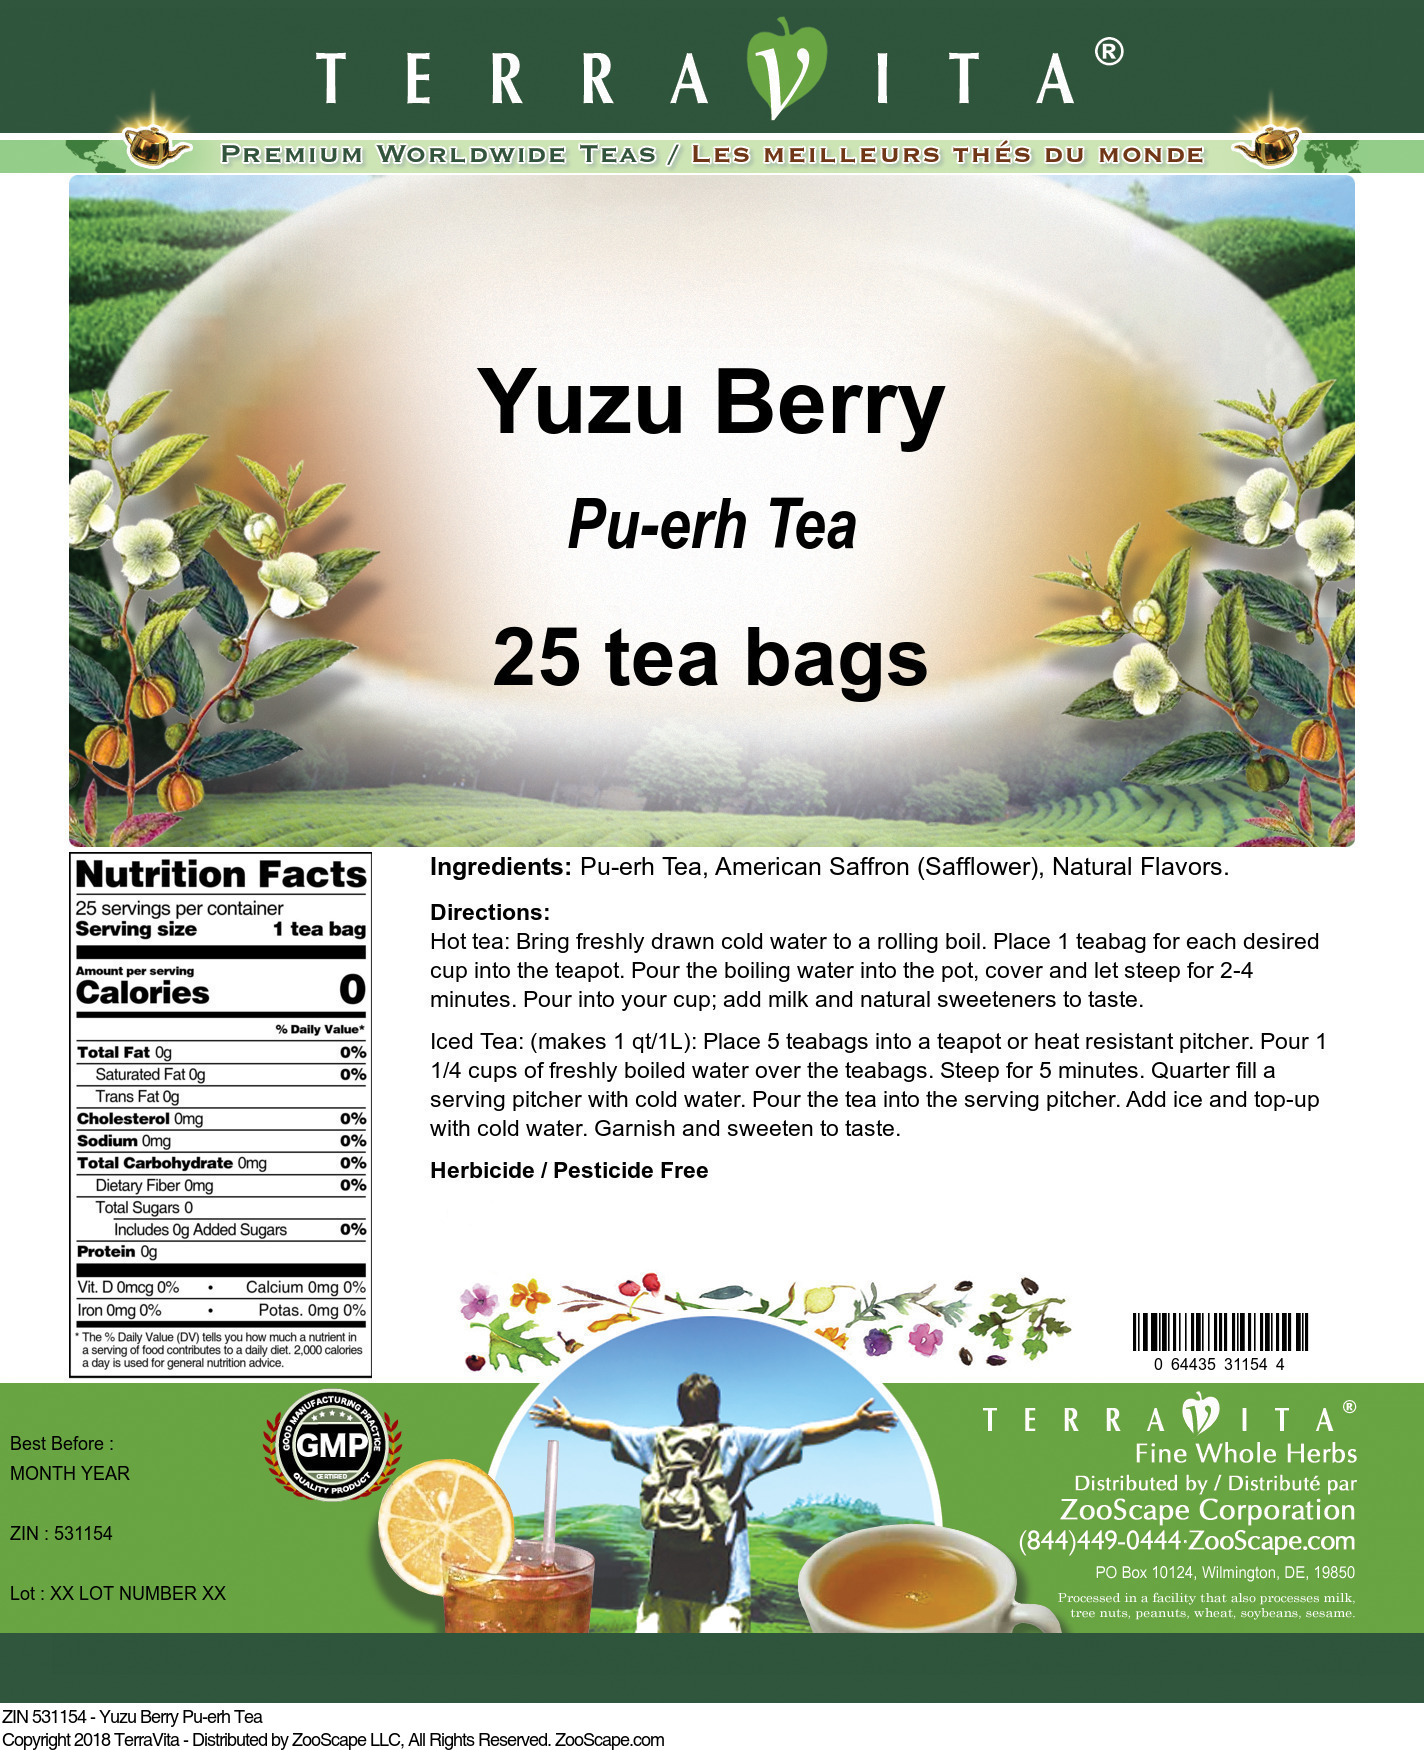 Yuzu Berry Pu-erh Tea - Label